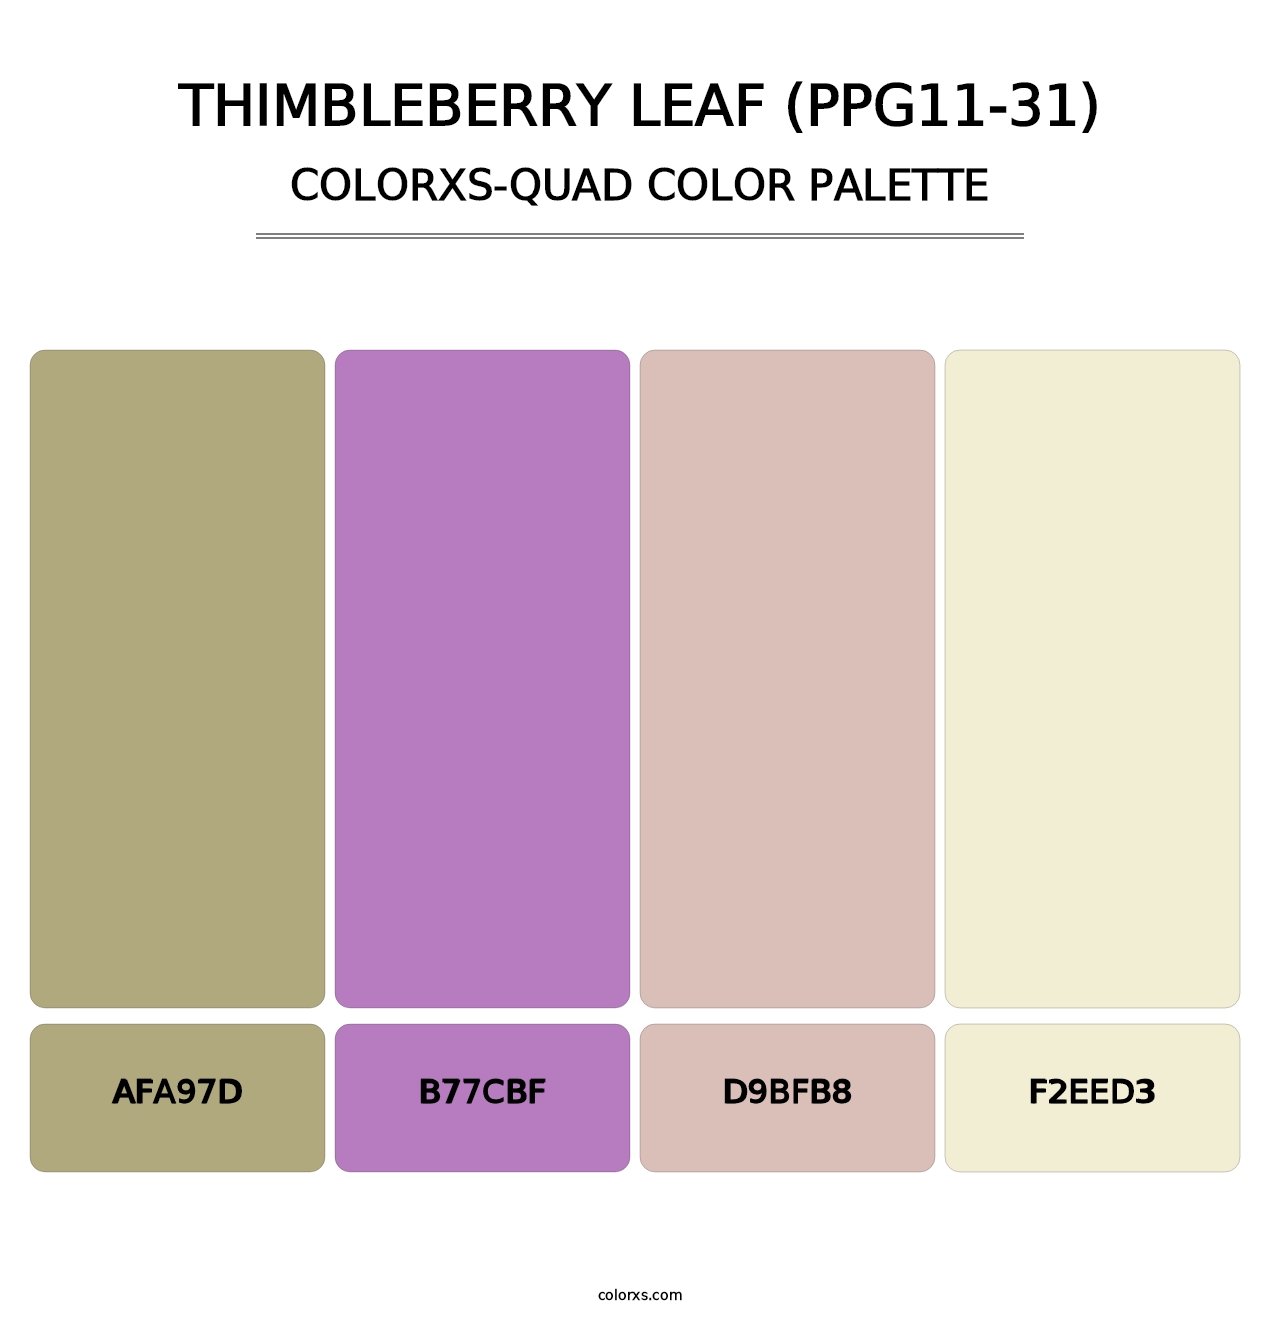 Thimbleberry Leaf (PPG11-31) - Colorxs Quad Palette